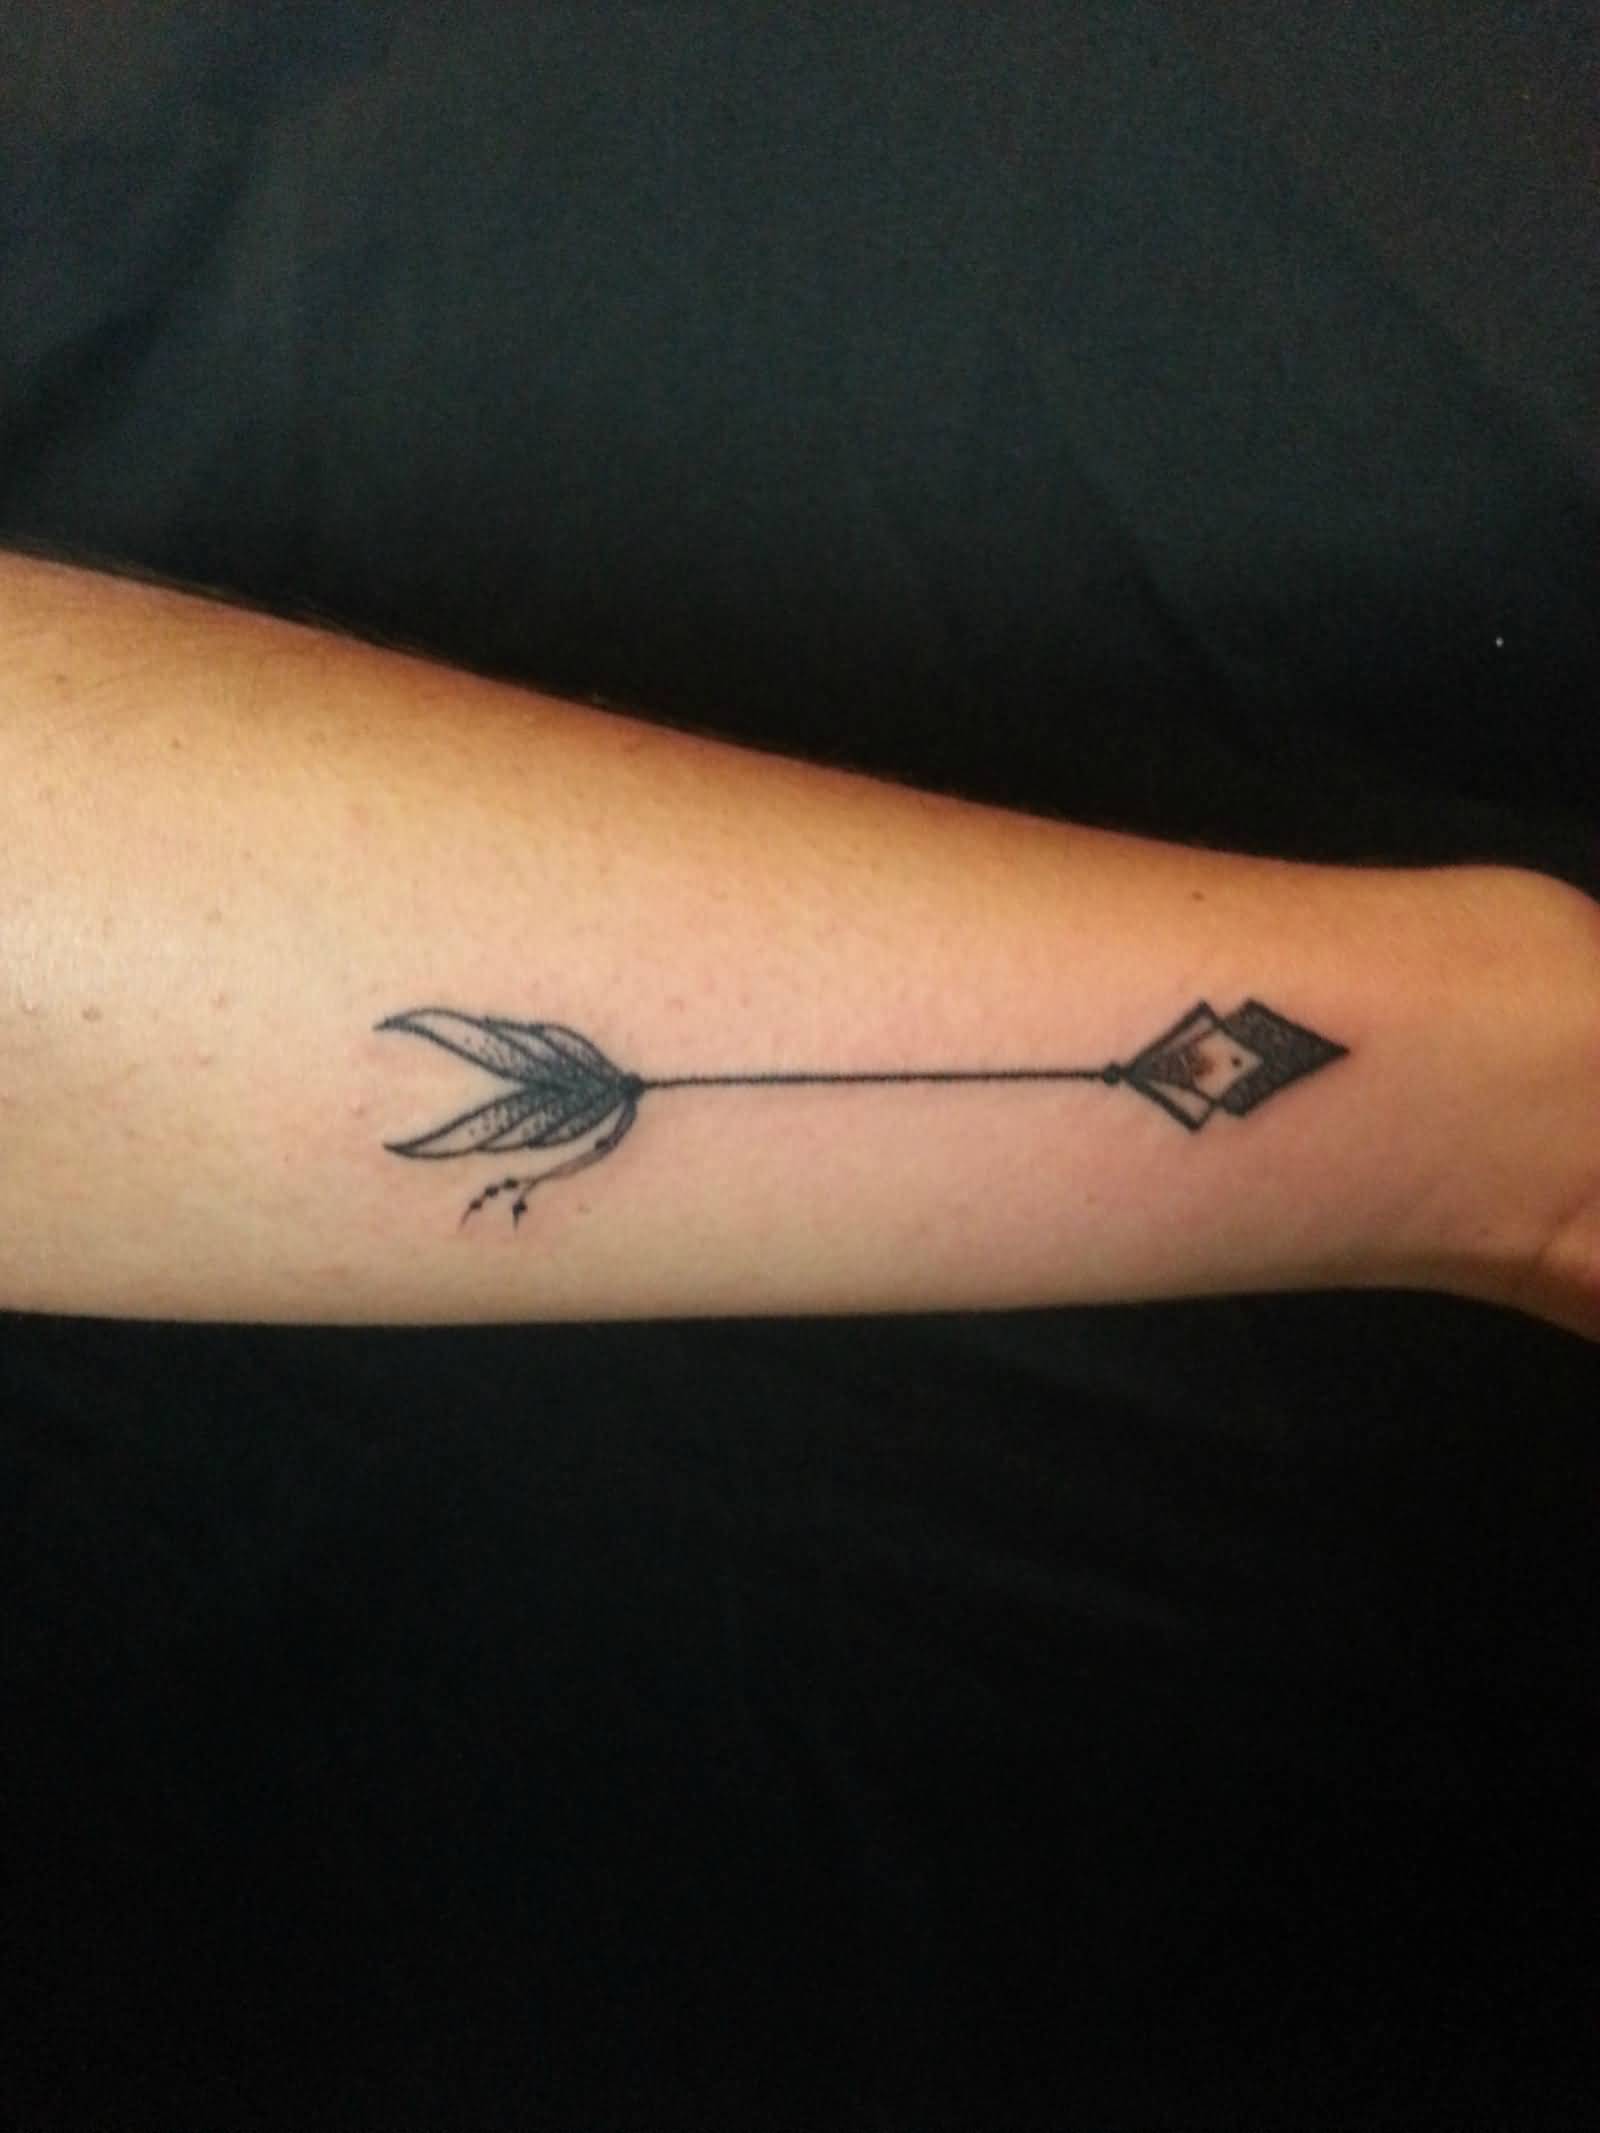 Adoreable Arrow Tattoo On Wrist